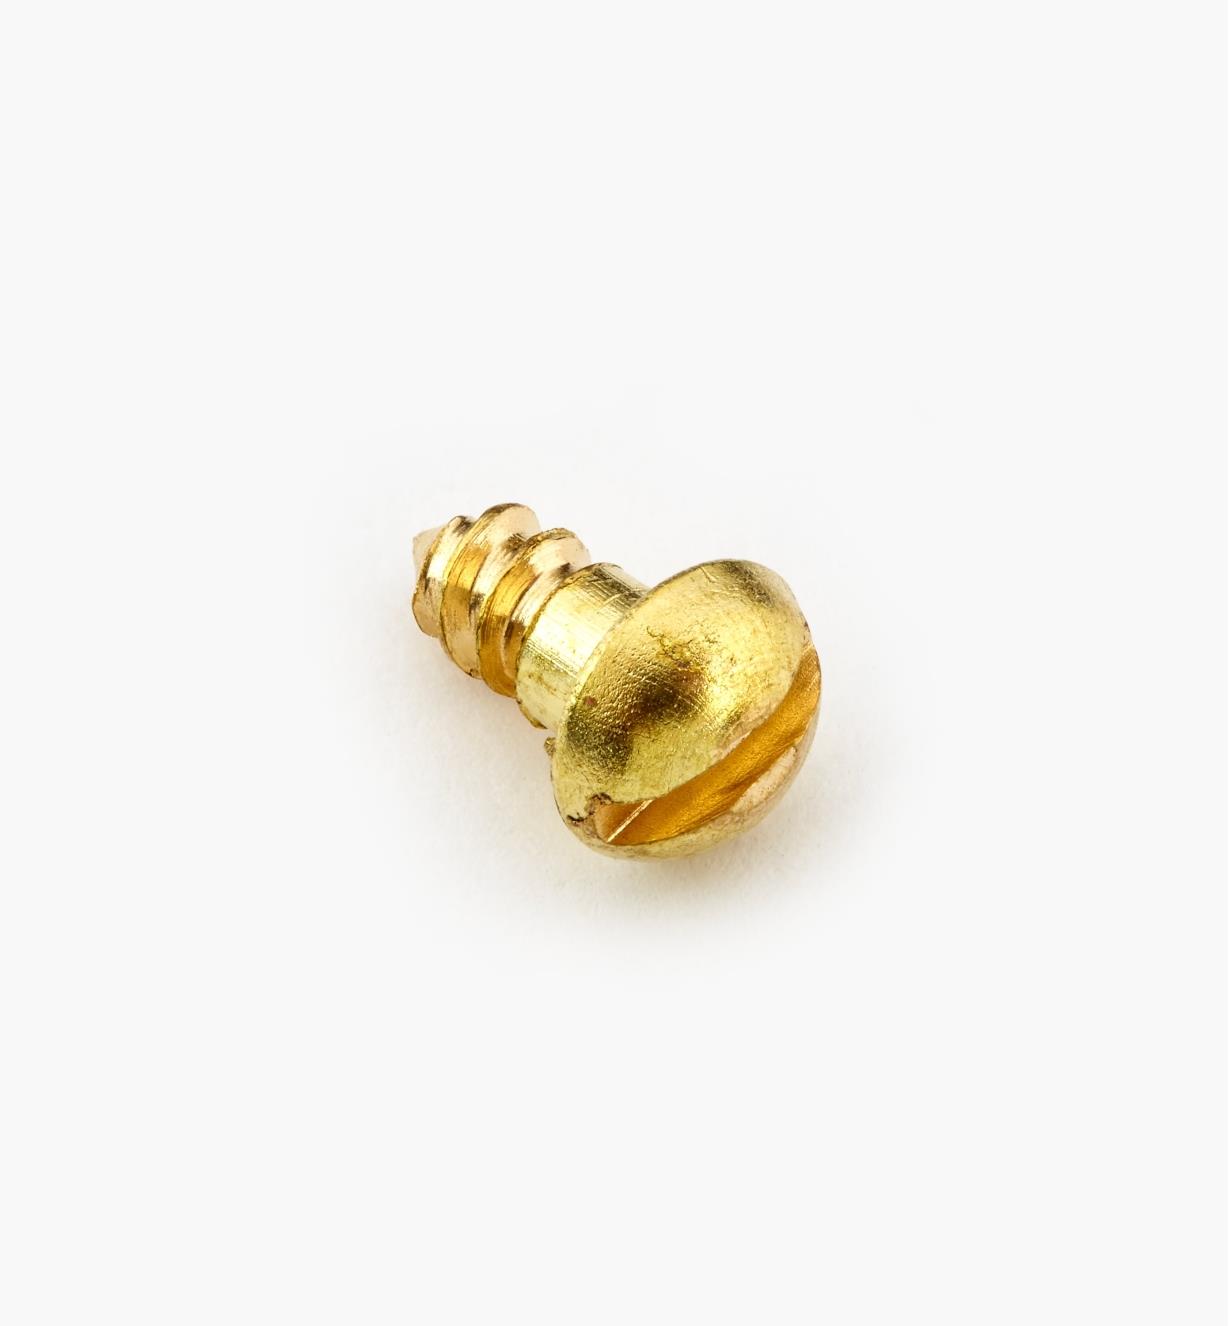 91Y0401 - #4, 1/4" Round Brass Screws, pkg. of 100